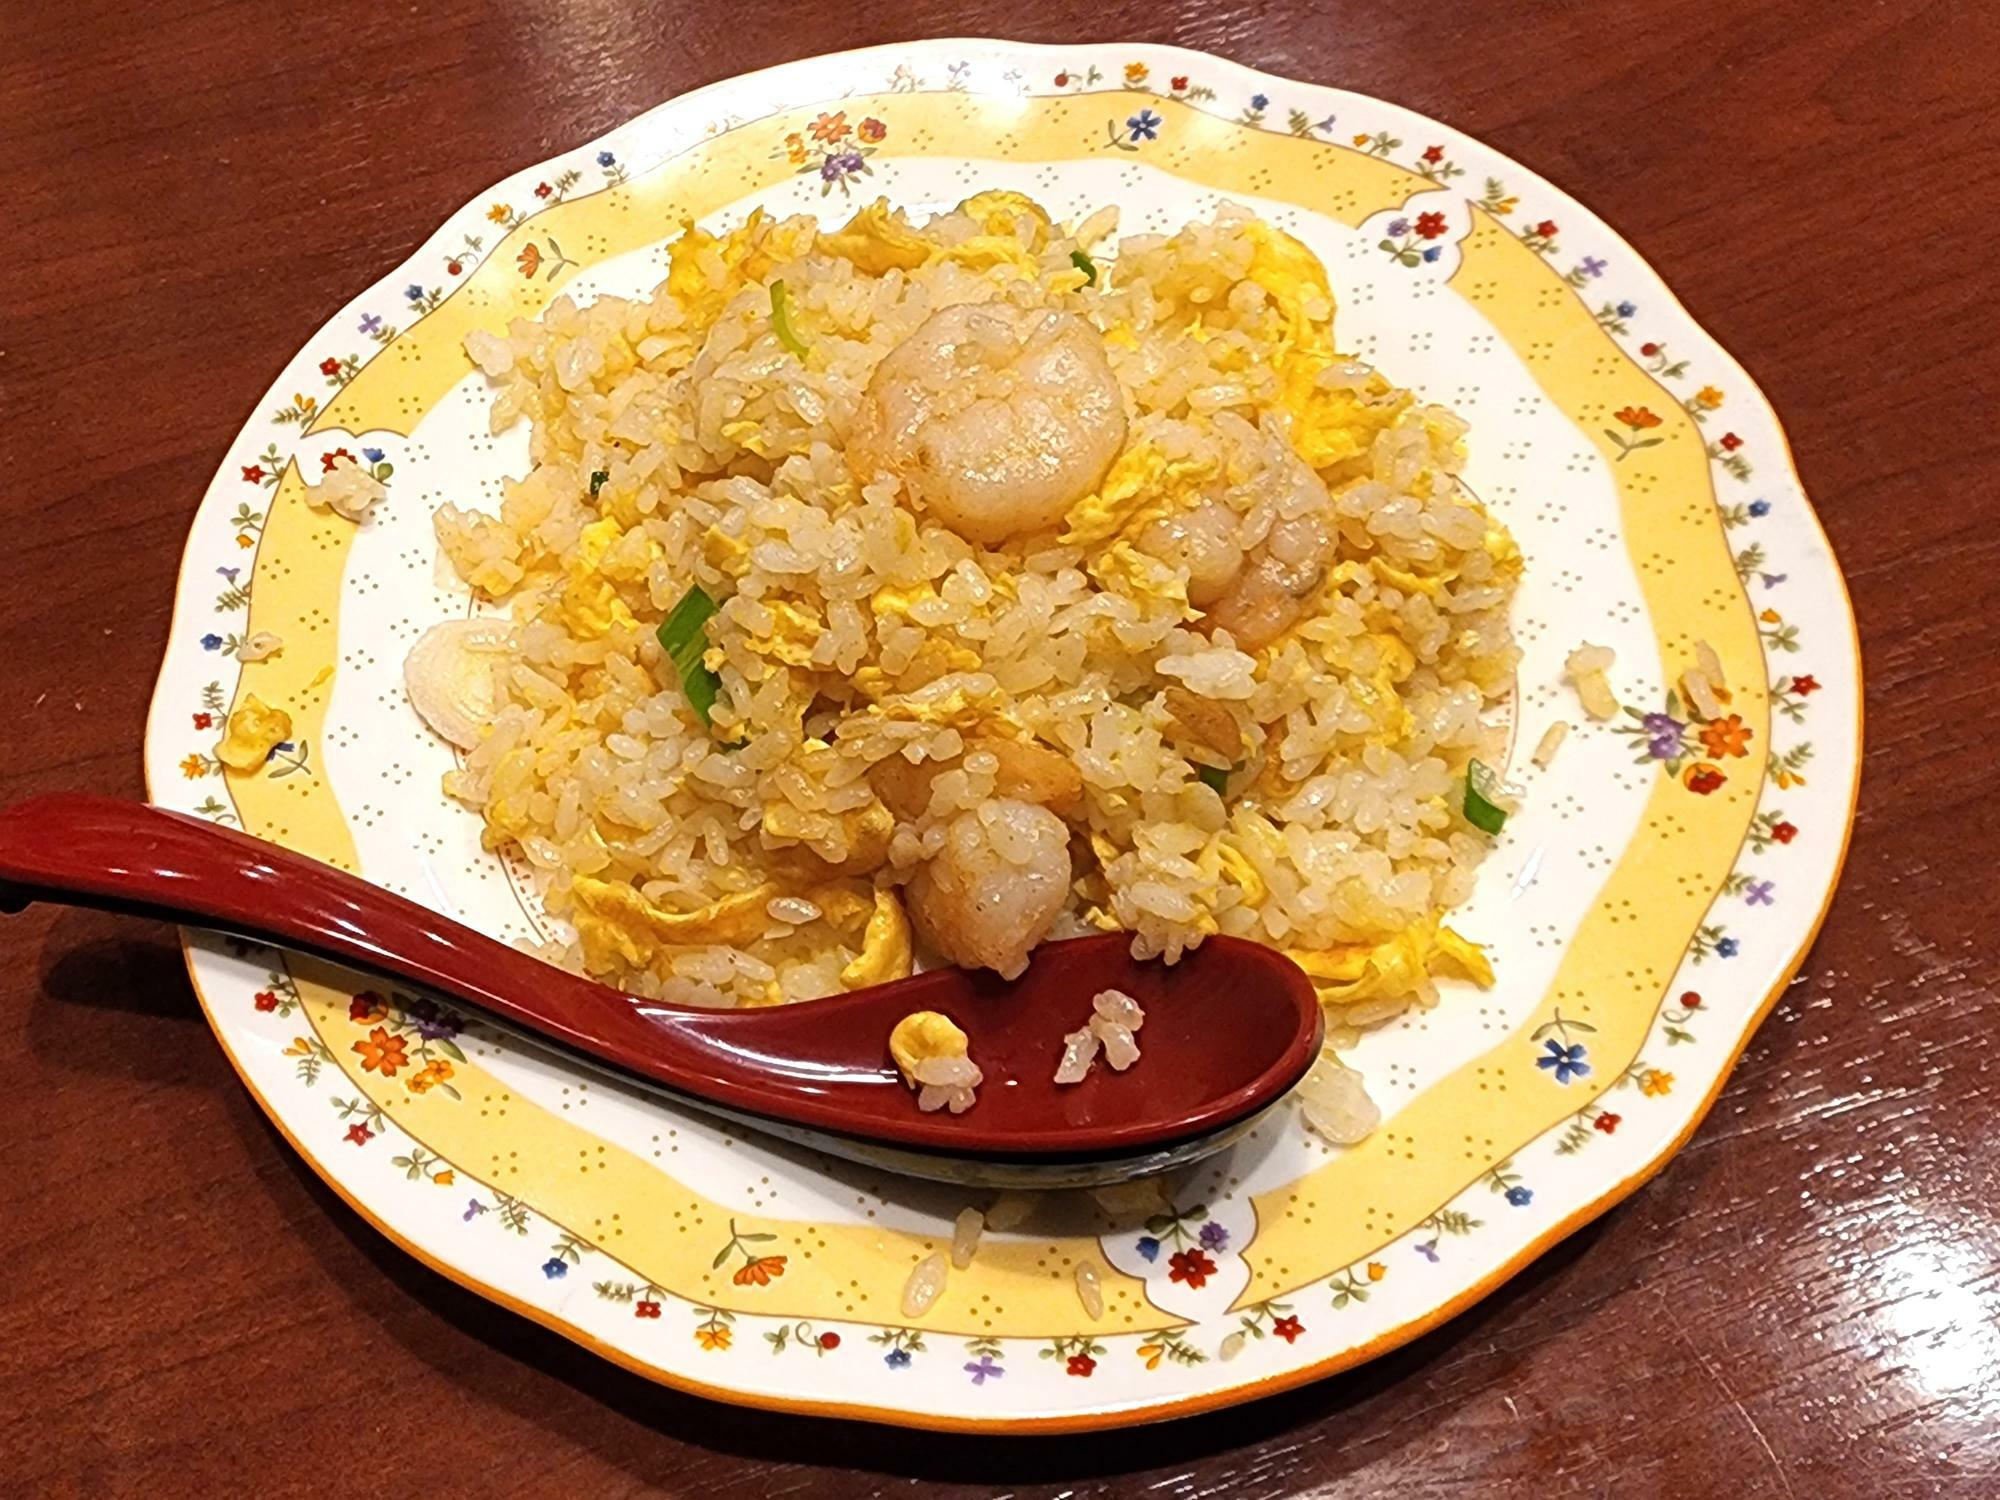 「中国料理 味仙」ラーメンセットのチャーハン。